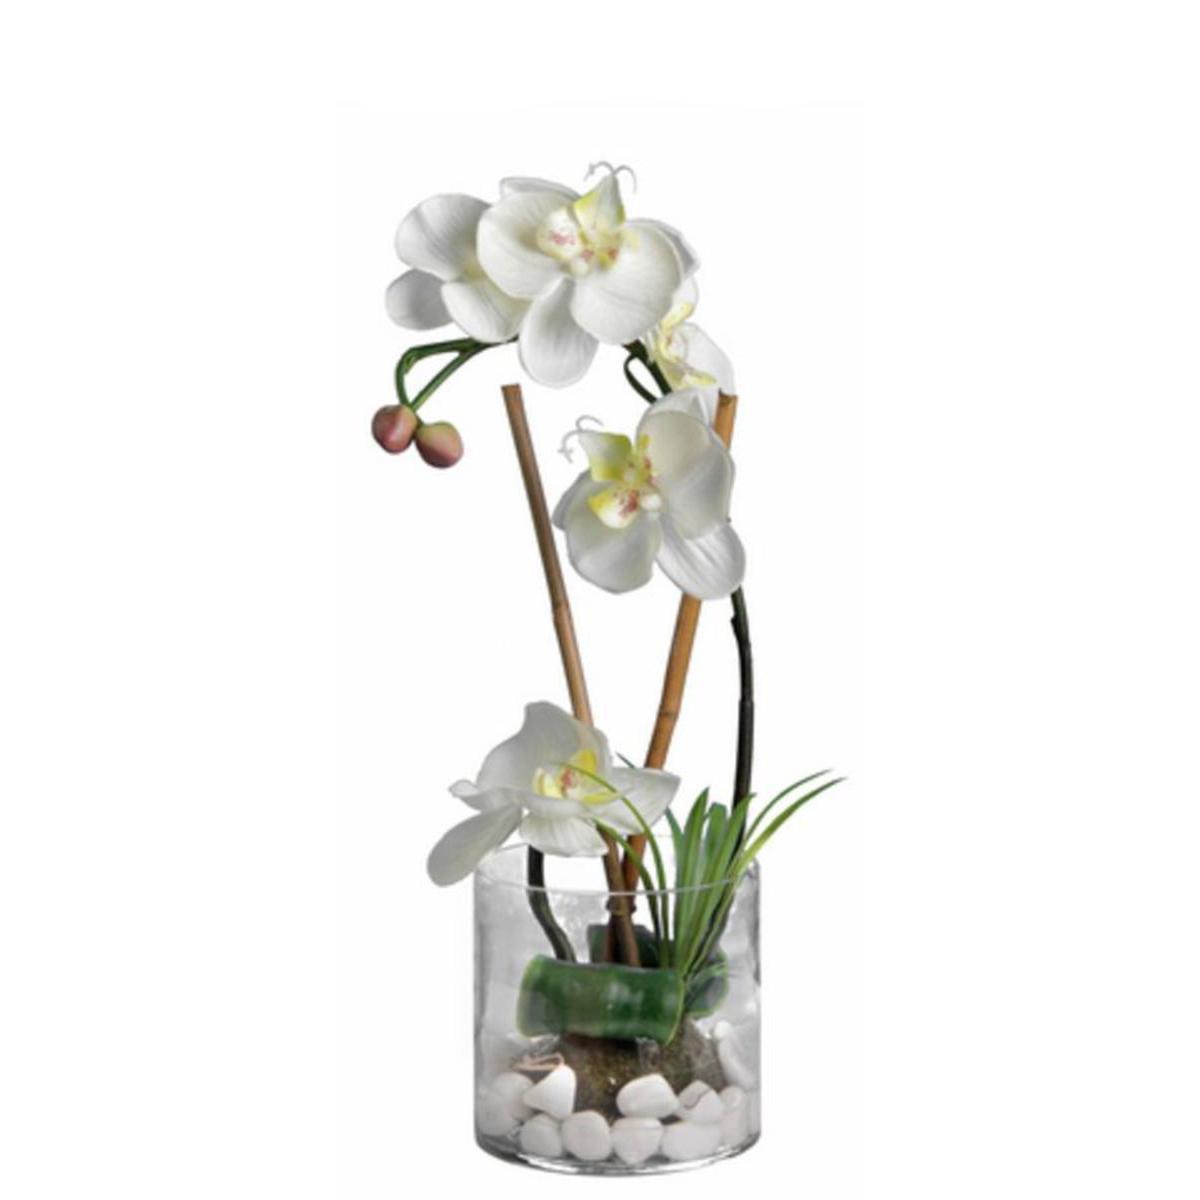 Orchidée en vase - Verre plastique polyester - H 36 cm - Blanc